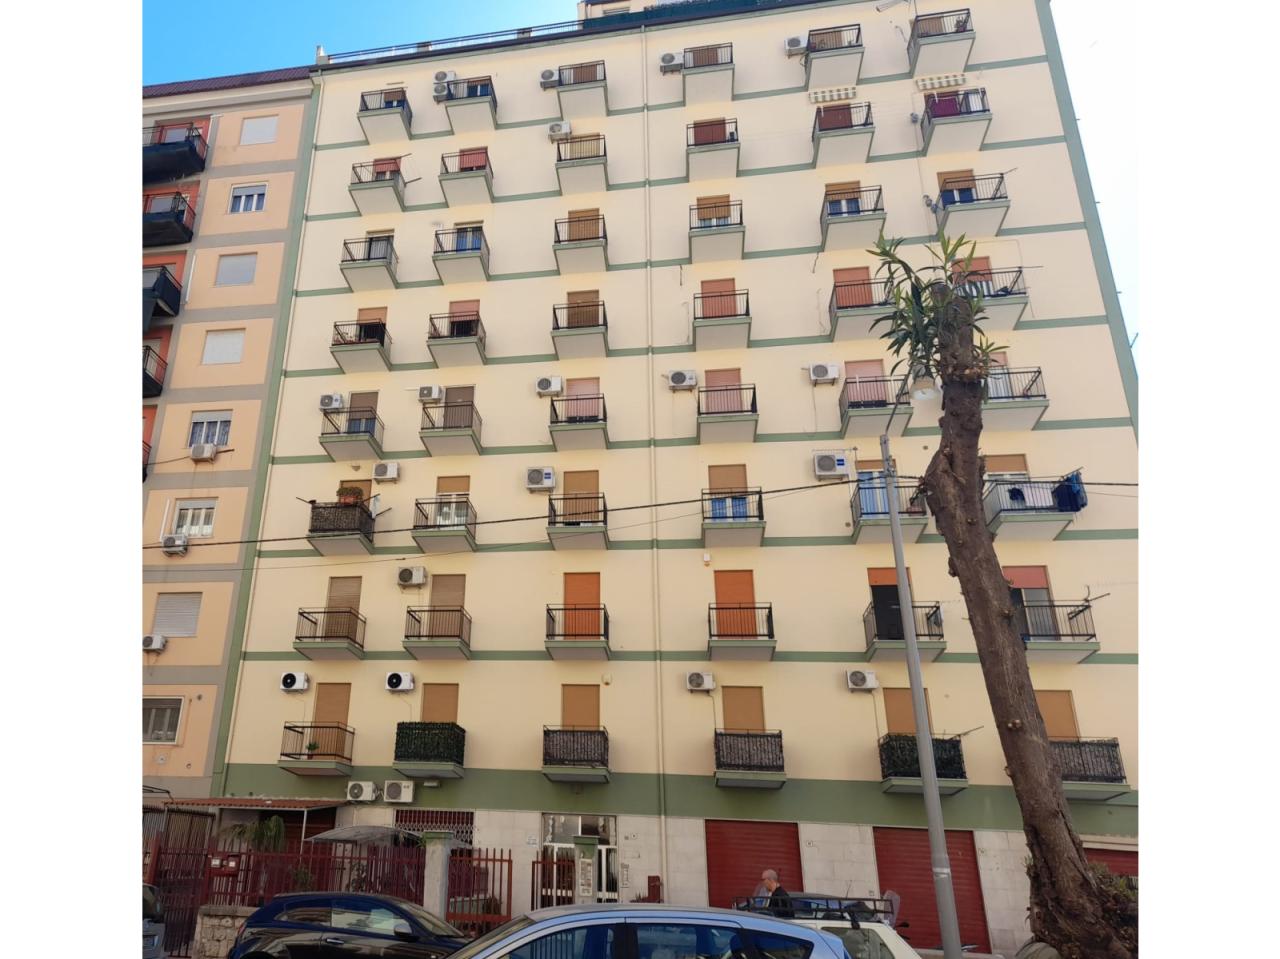 Verkoop Vier kamers, Palermo foto